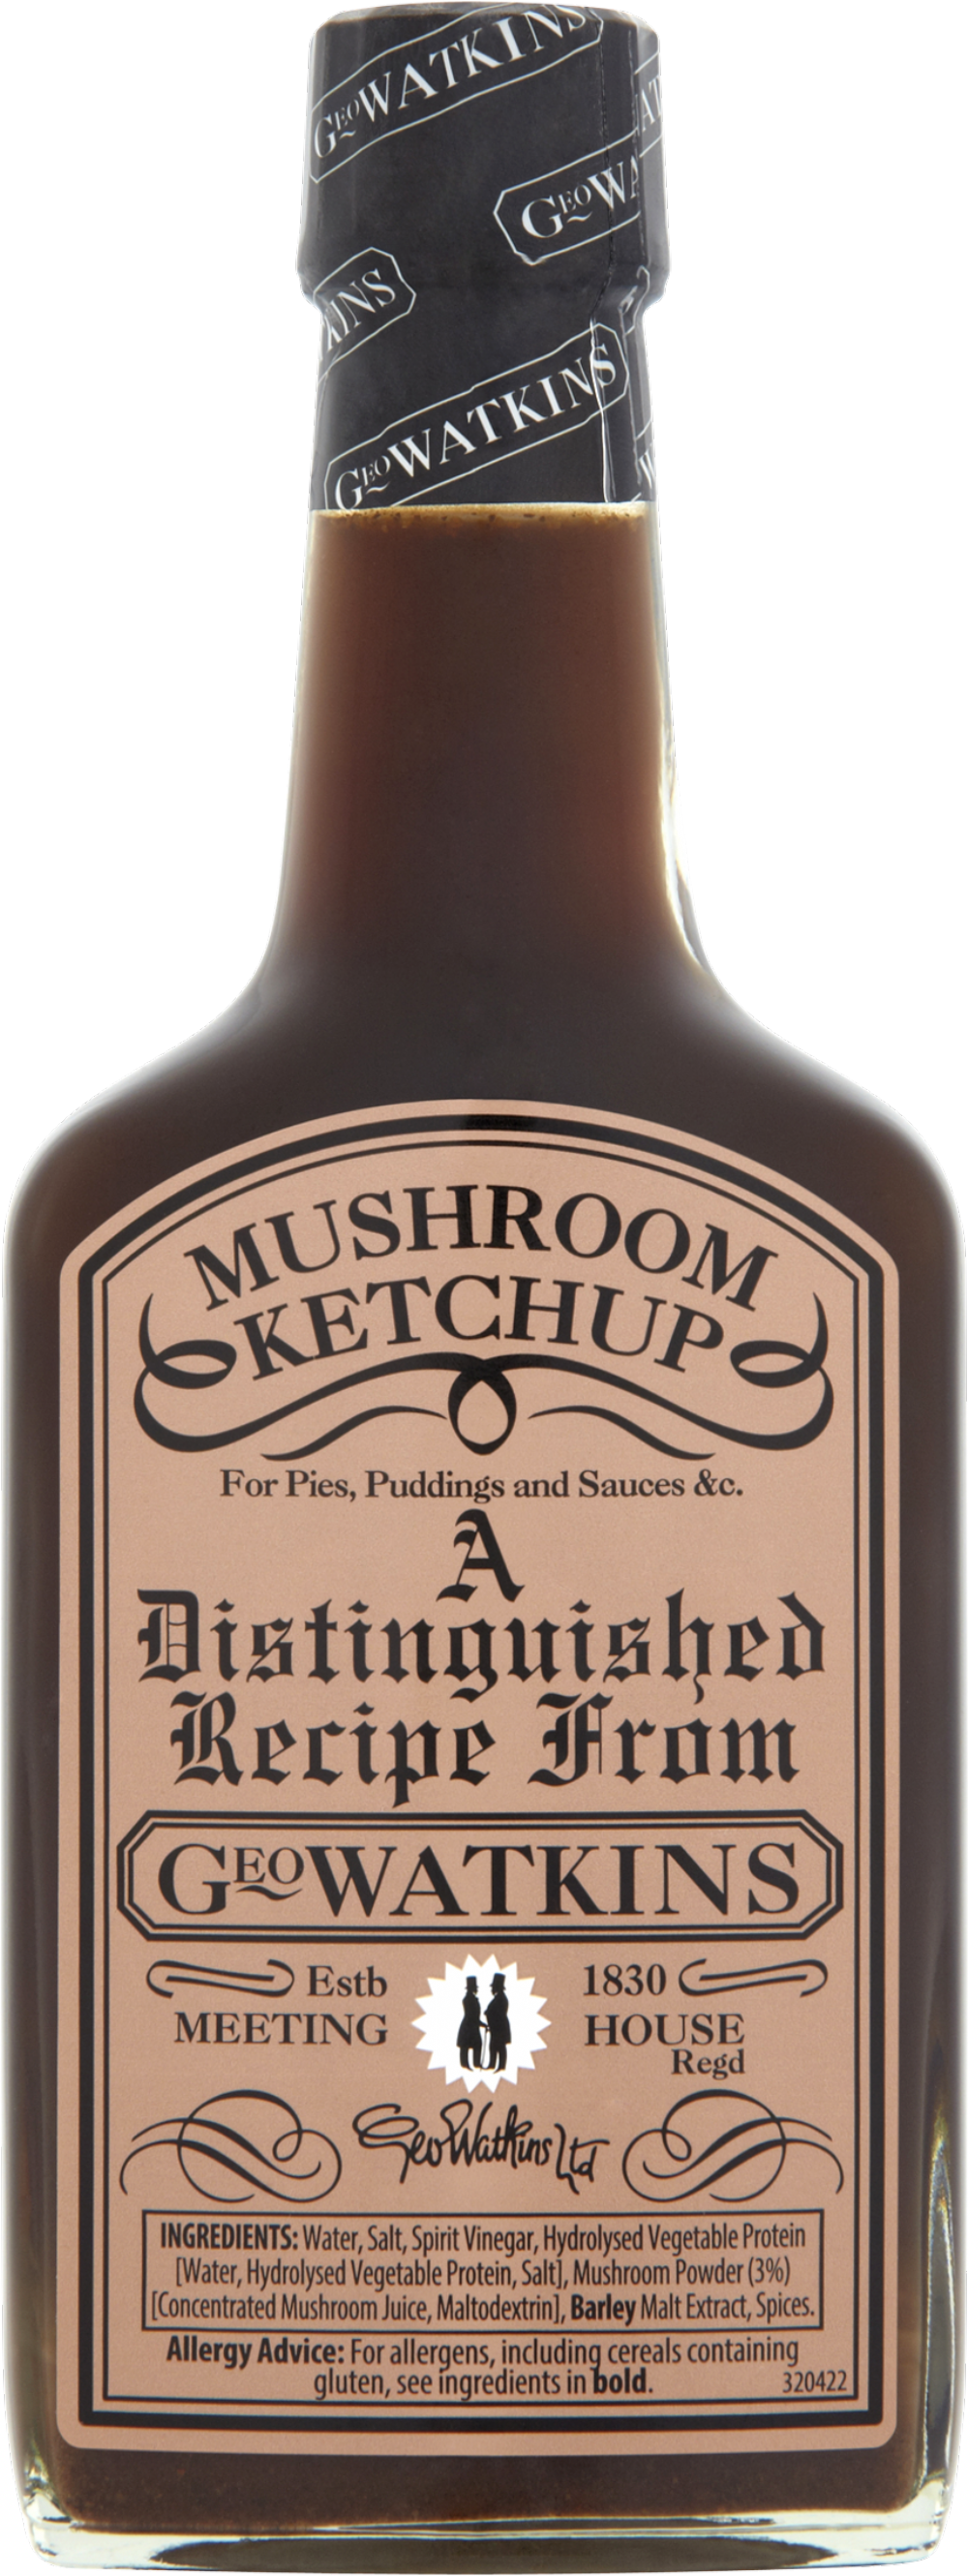 GEO WATKINS Mushroom Ketchup 190ml